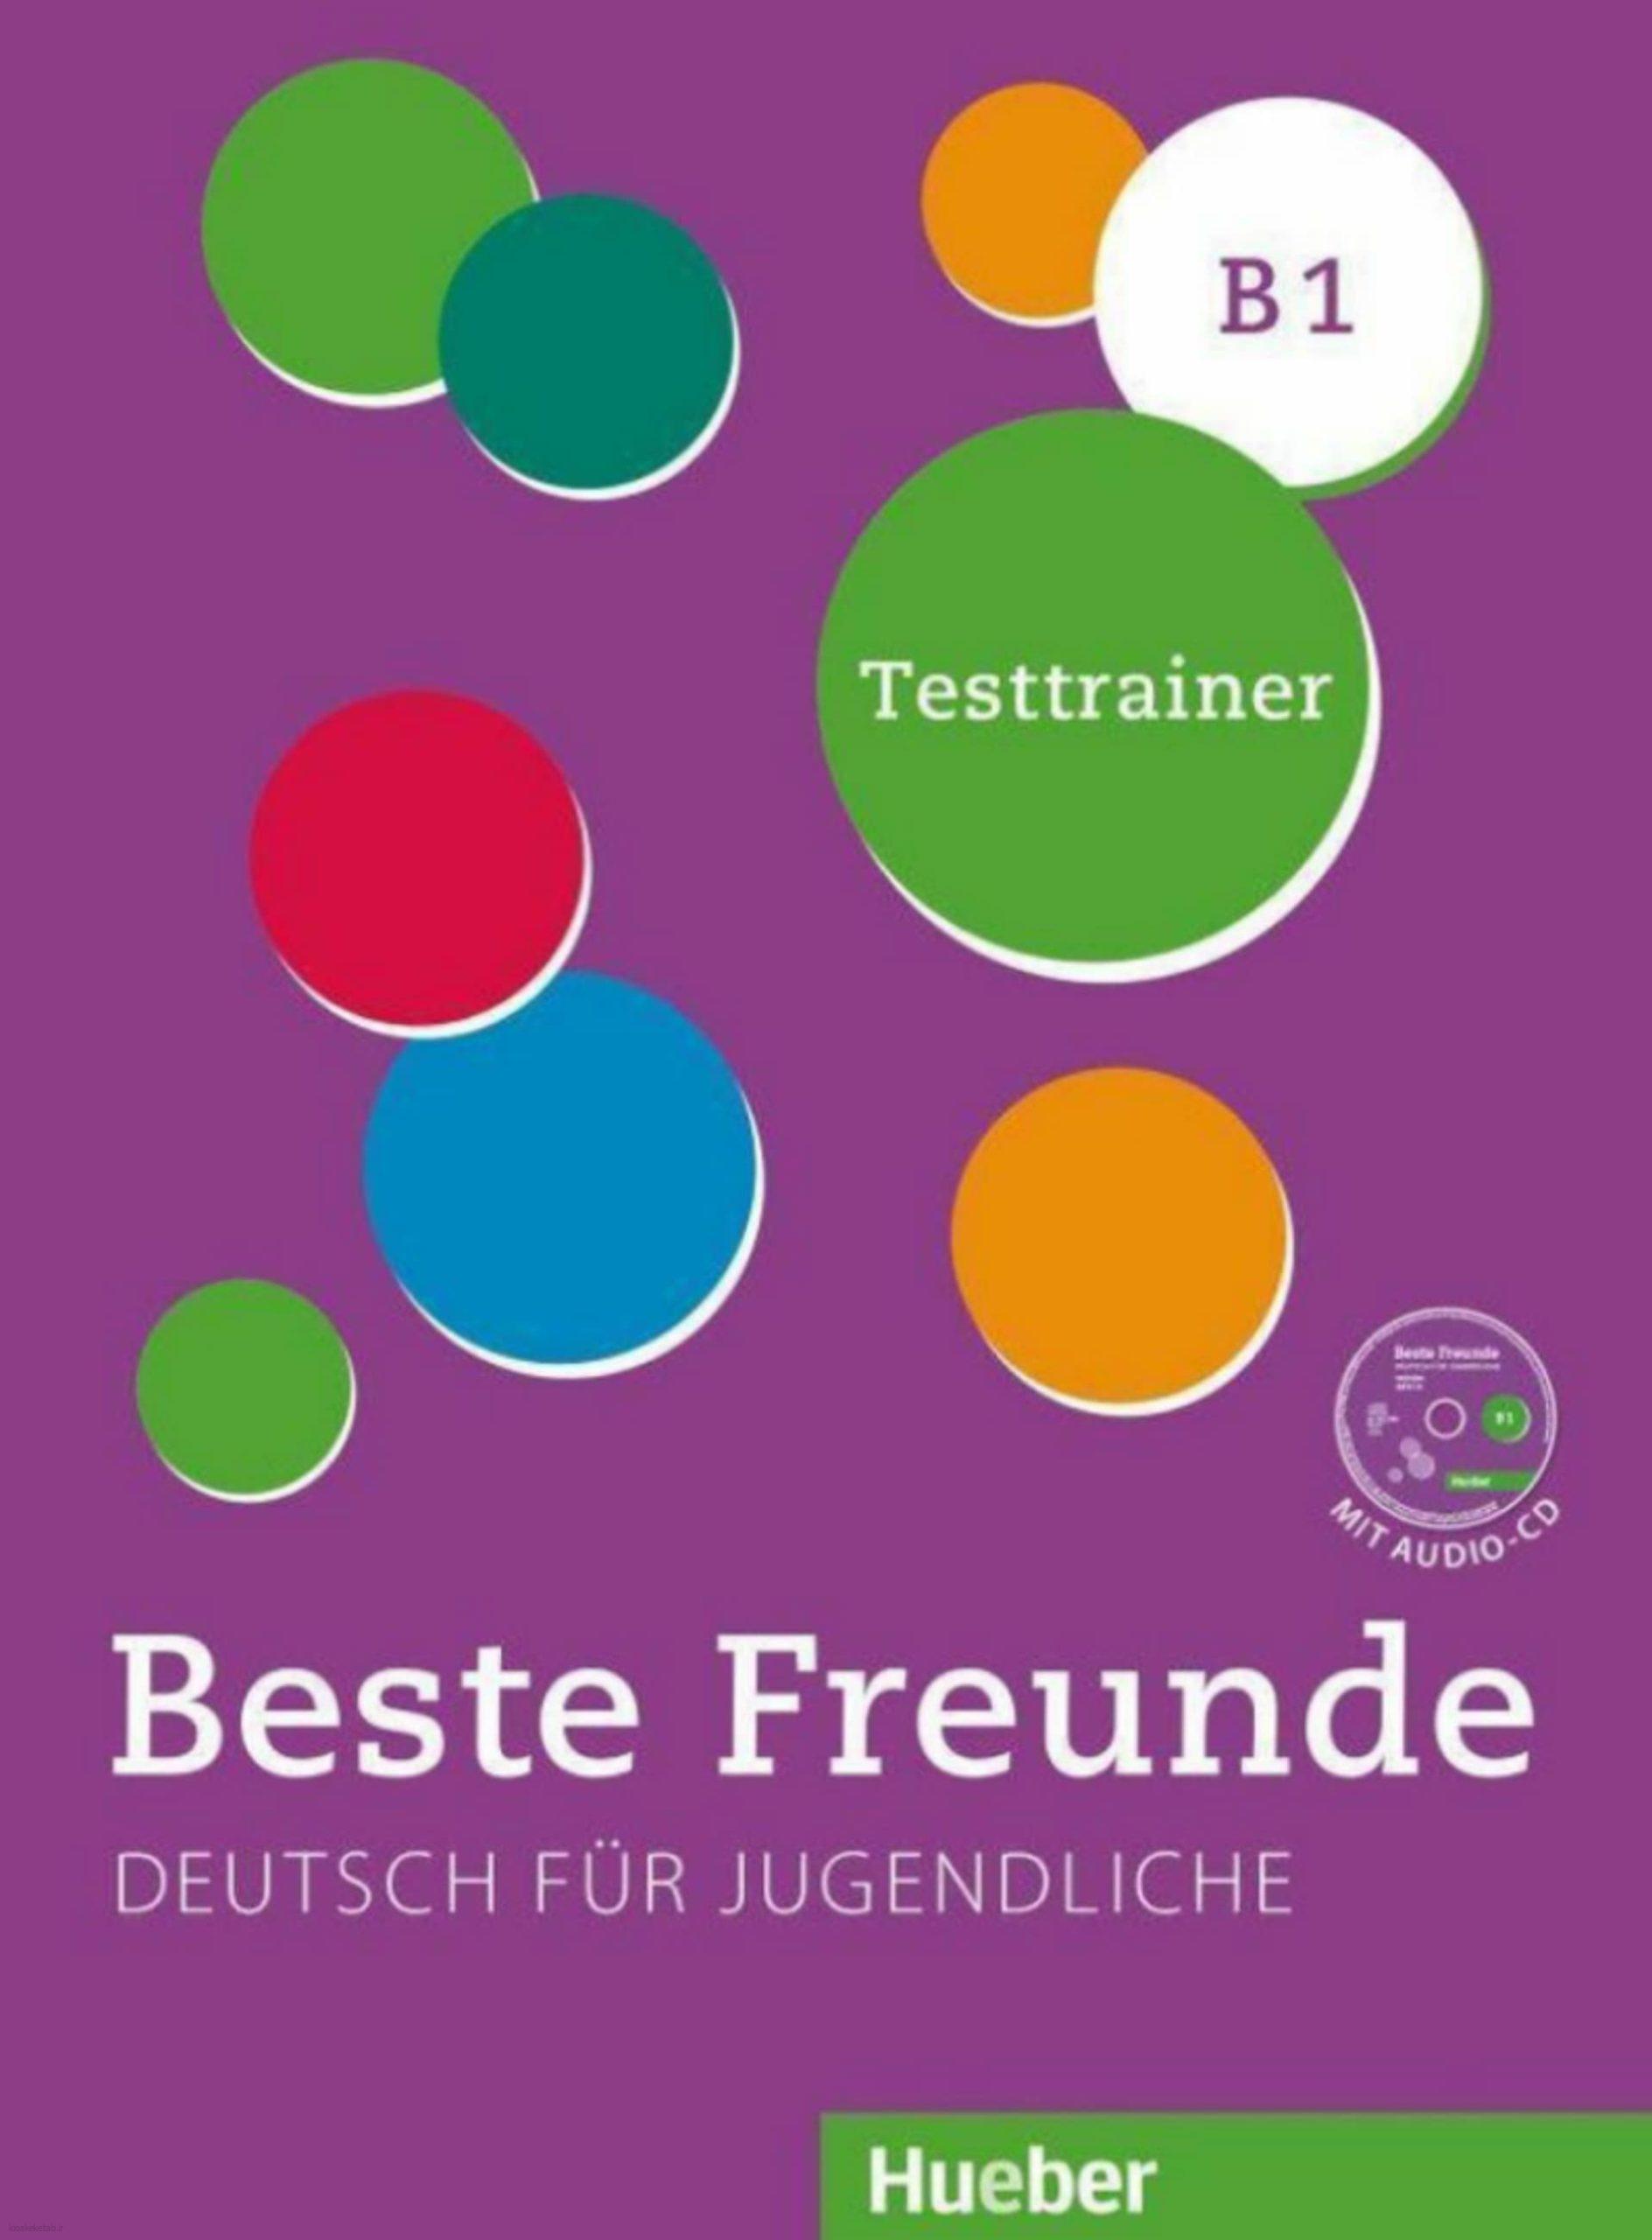 دانلود کتاب آلمانیbeste freunde testtrainer b1